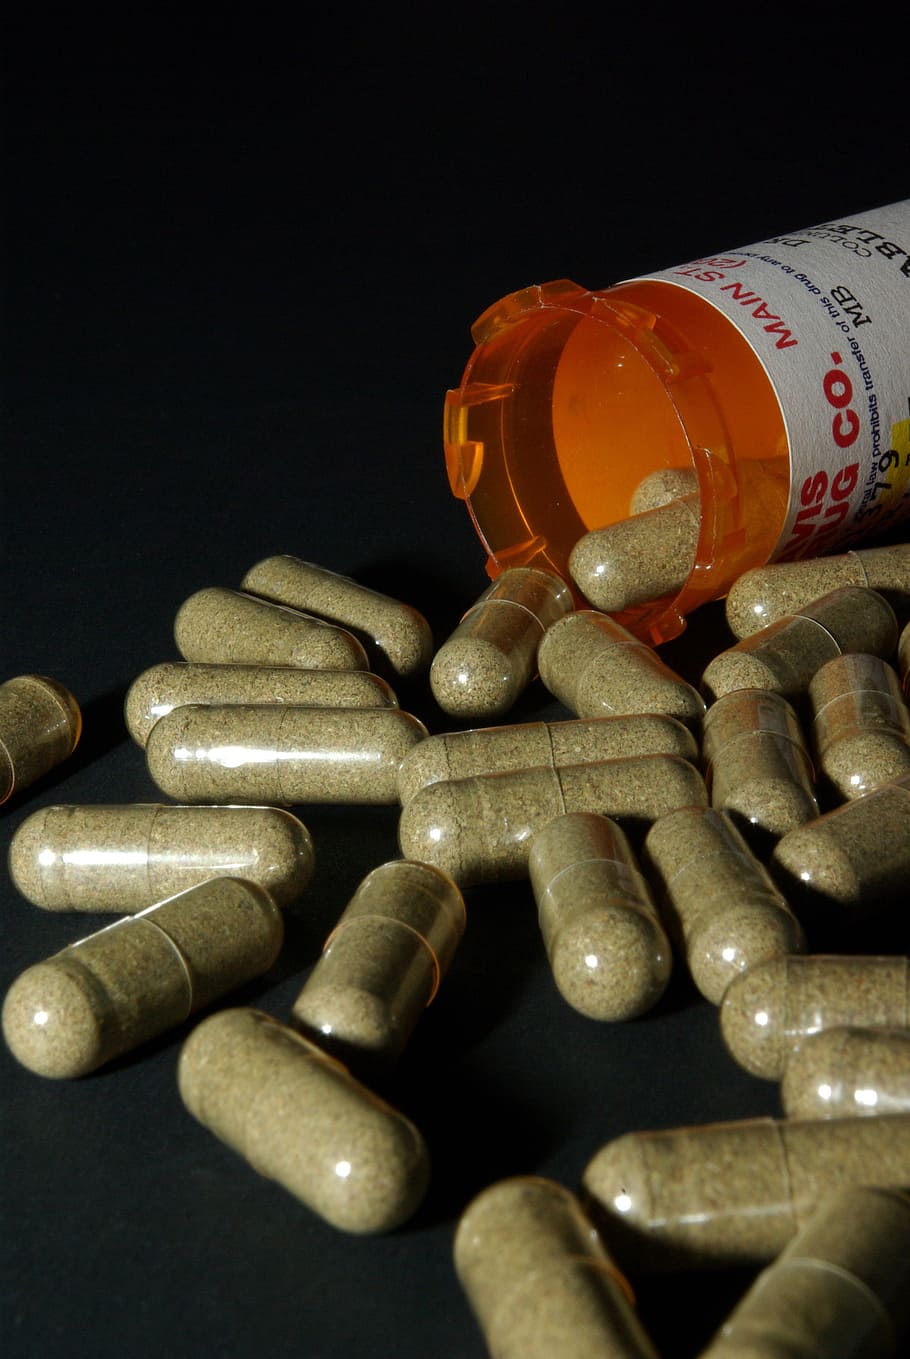 medication capsules, spilling, orange, prescription bottle, black, surface, medicine, medical, health, drugs